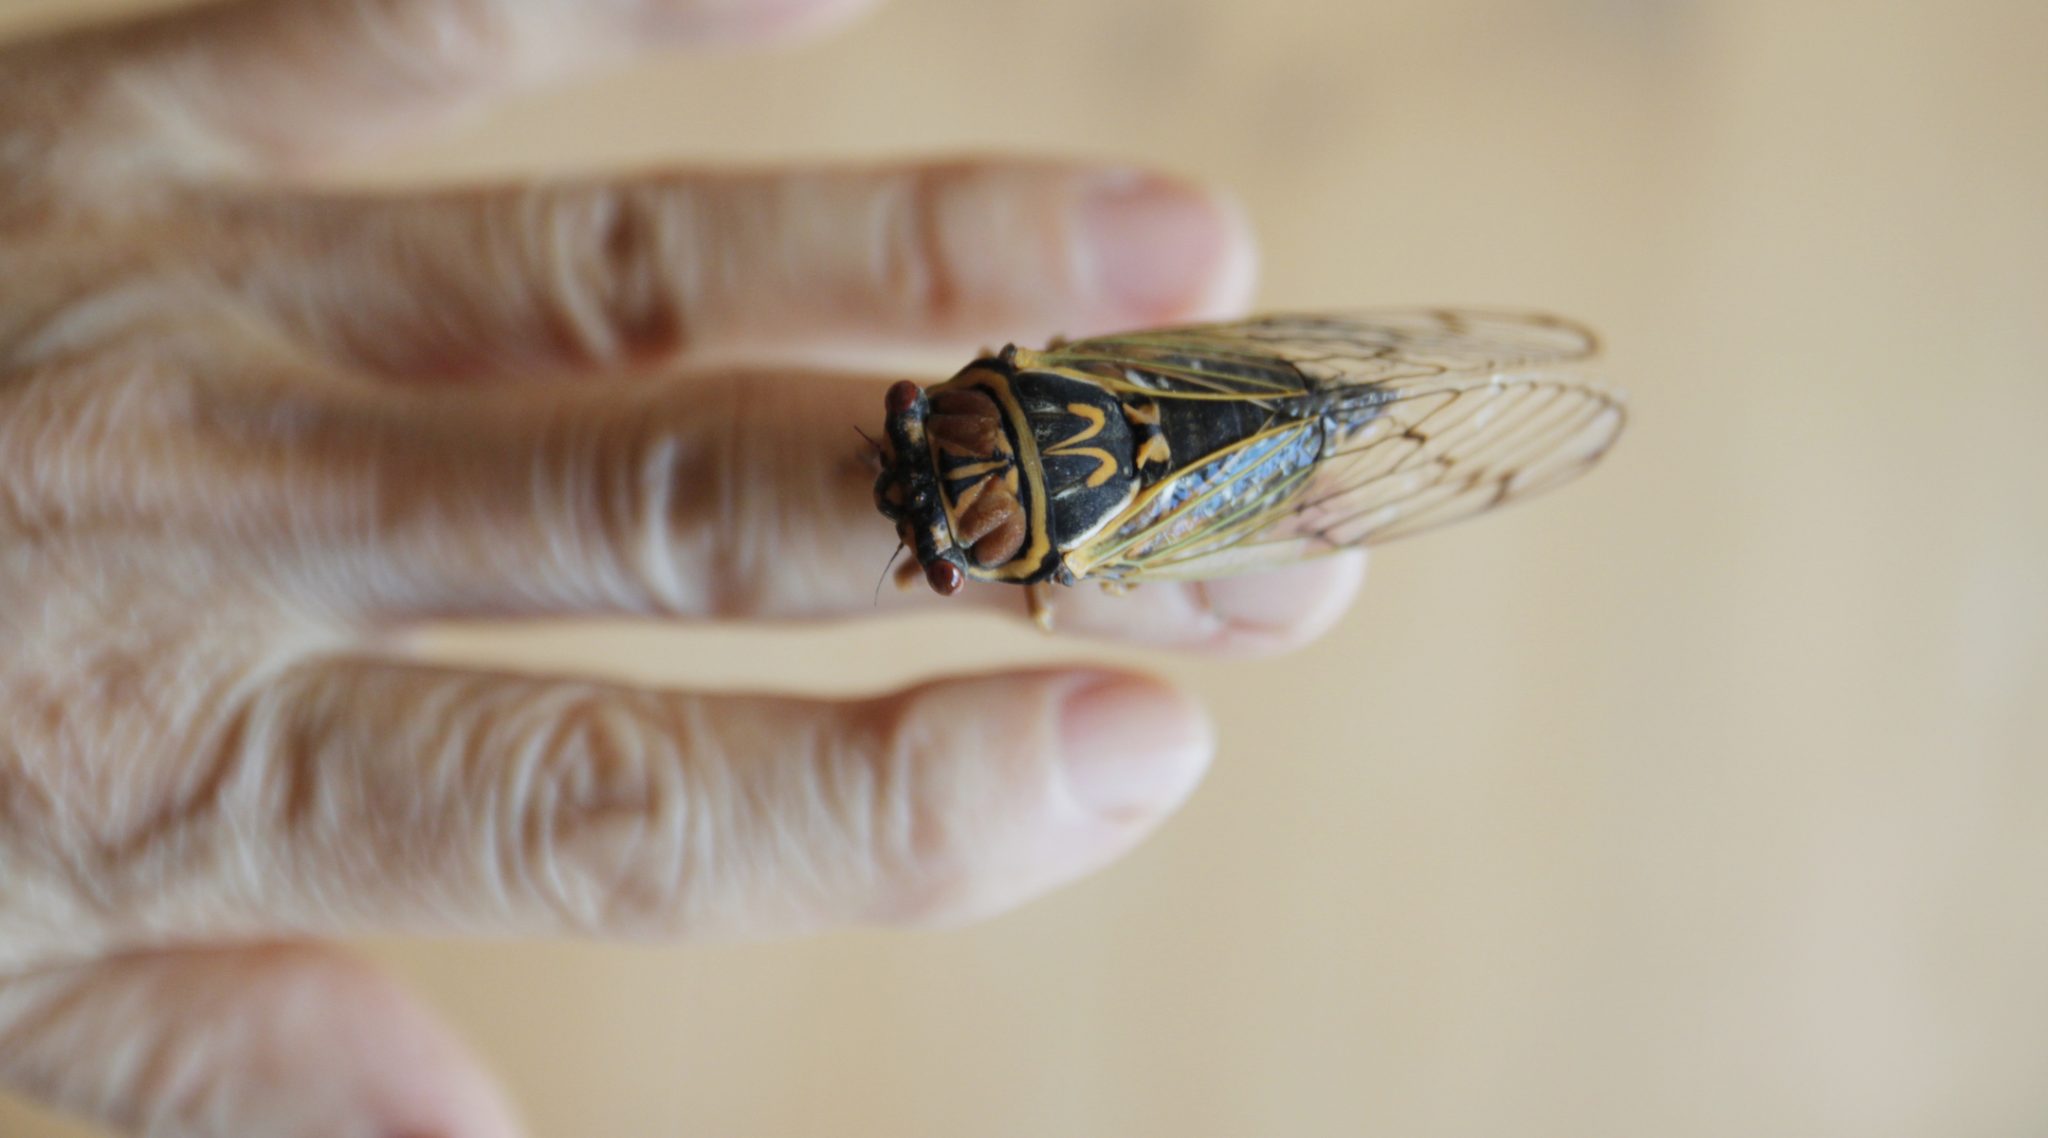 No Jew should be eating cicadas!